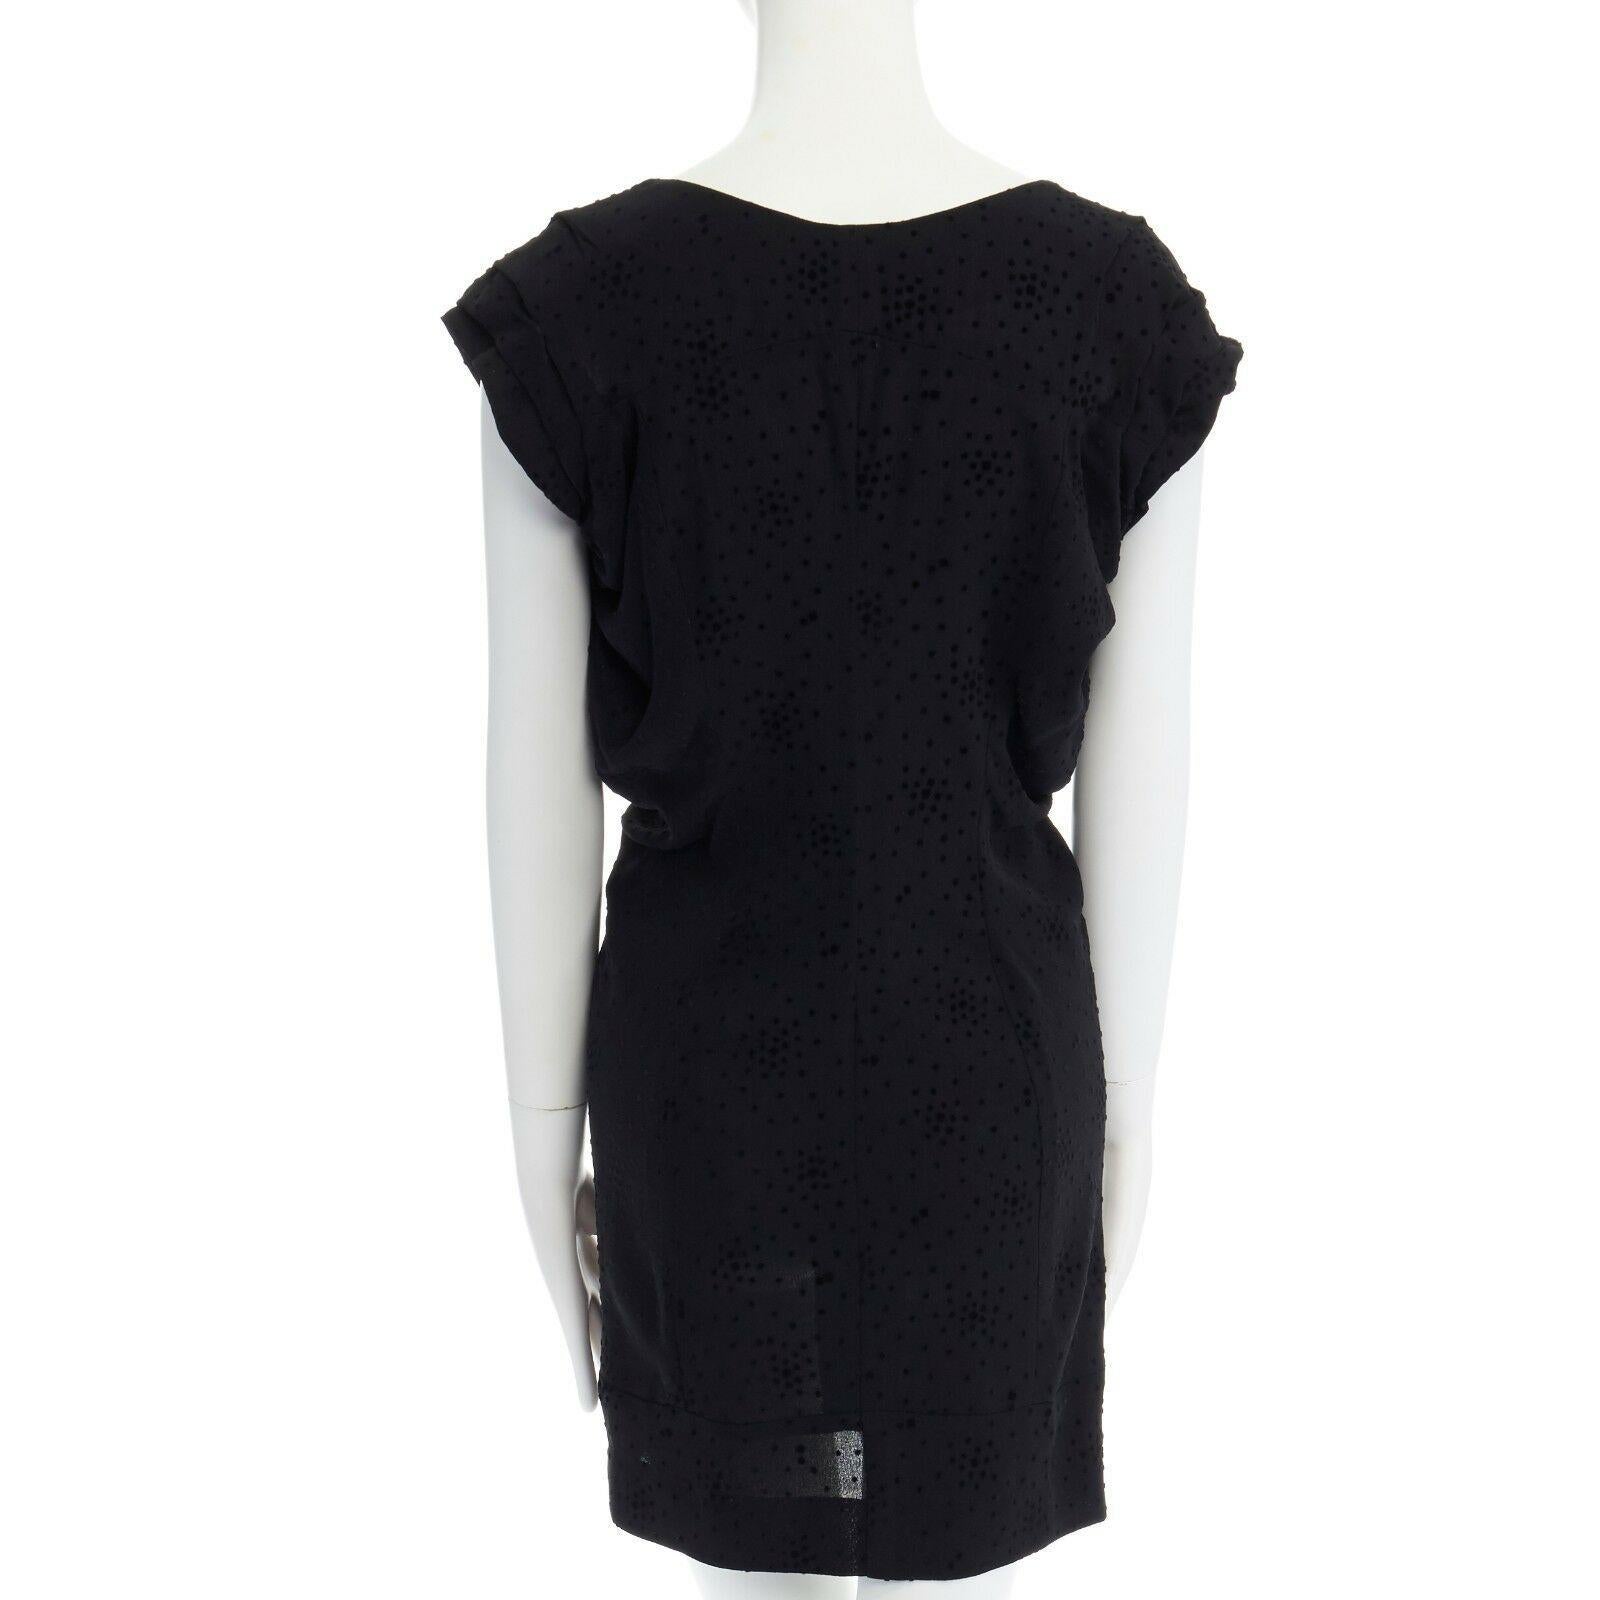 BALENCIAGA Black Dress velvet dot rusched waist mini dress S FR36 US4 1